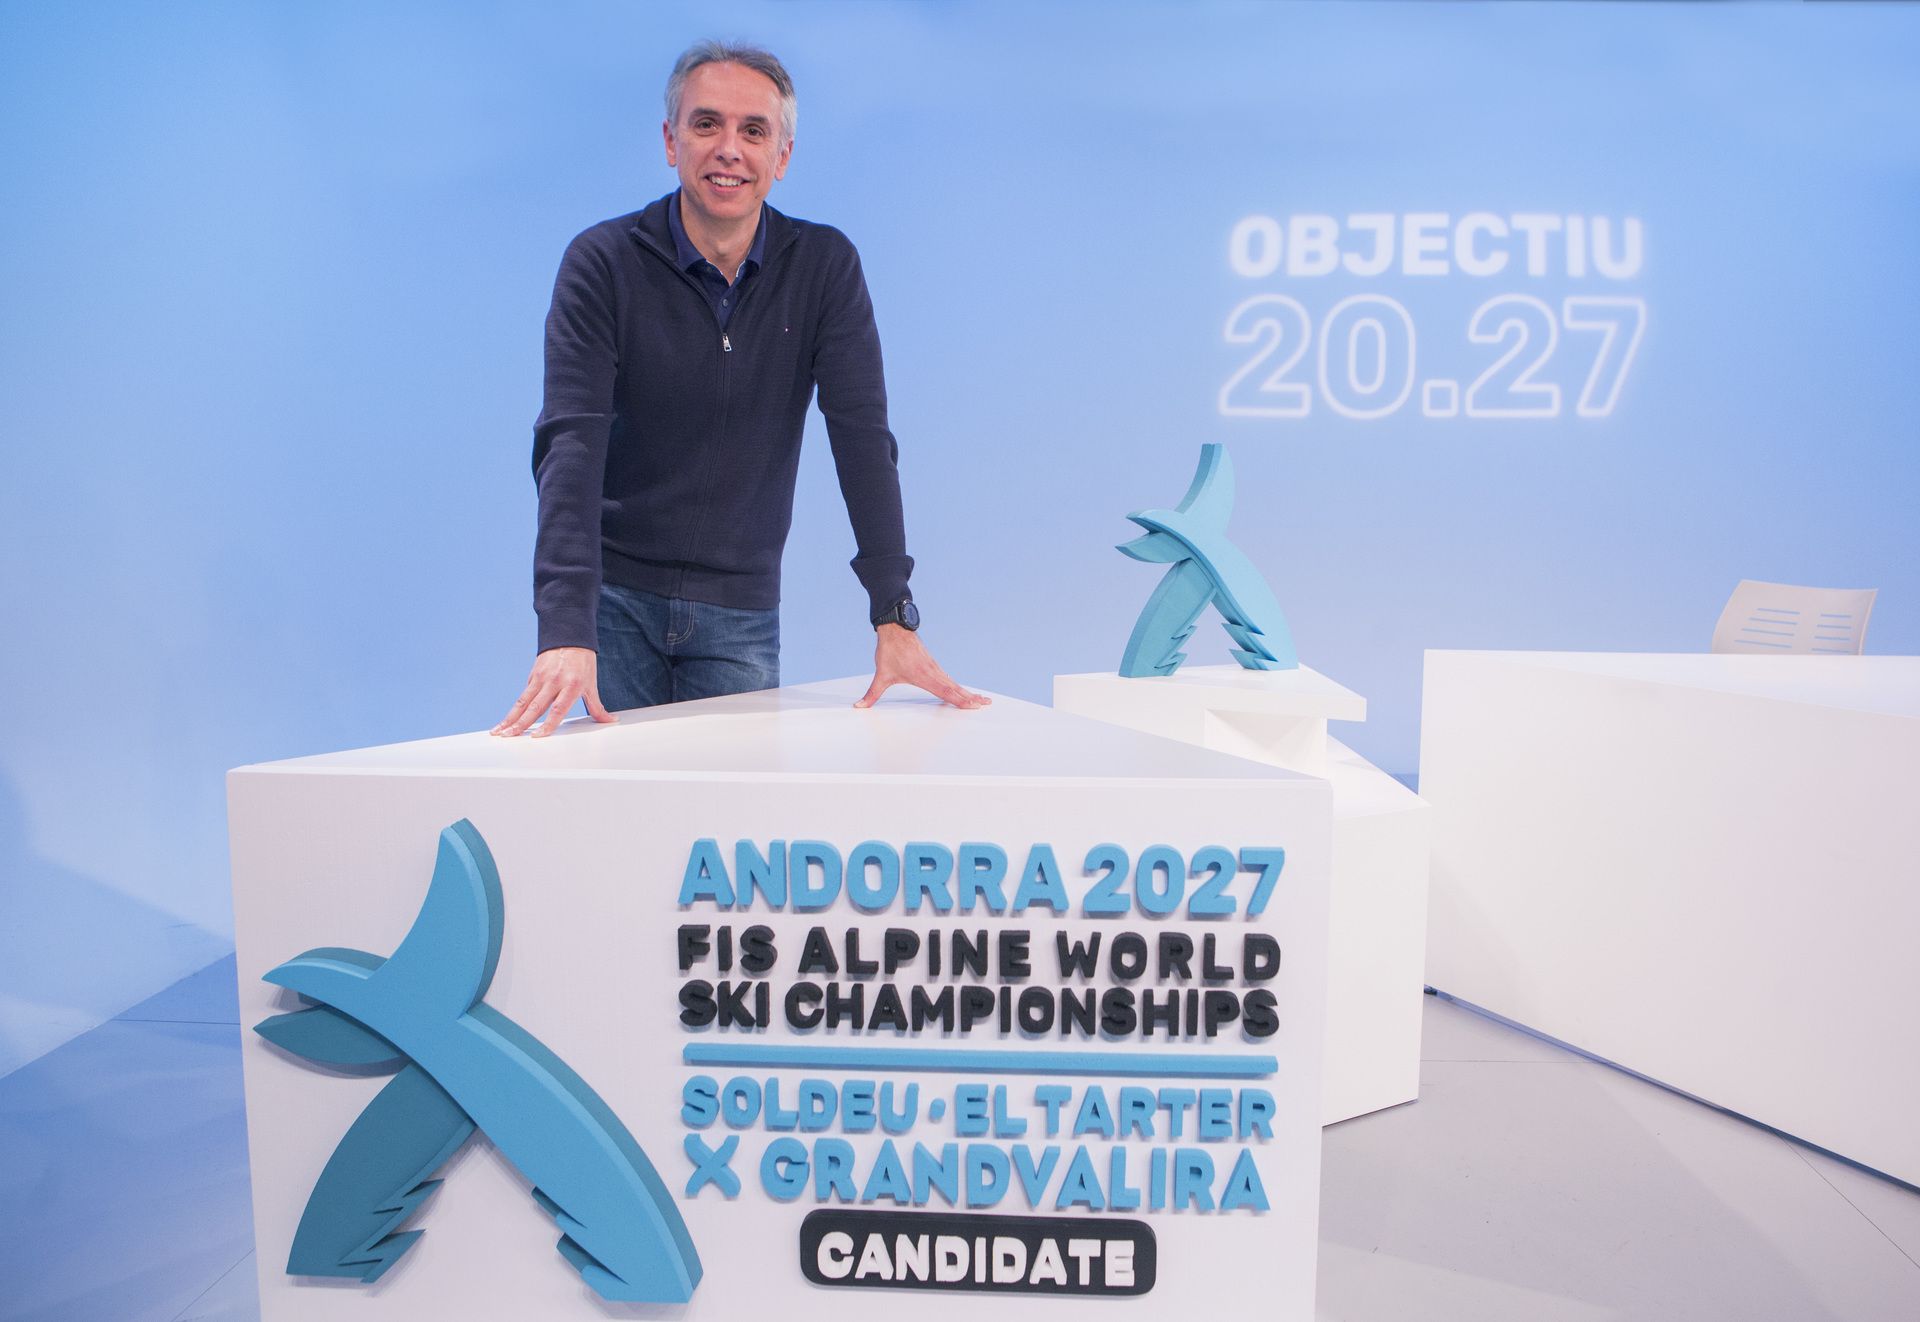 David Hidalgo Andorra 2027